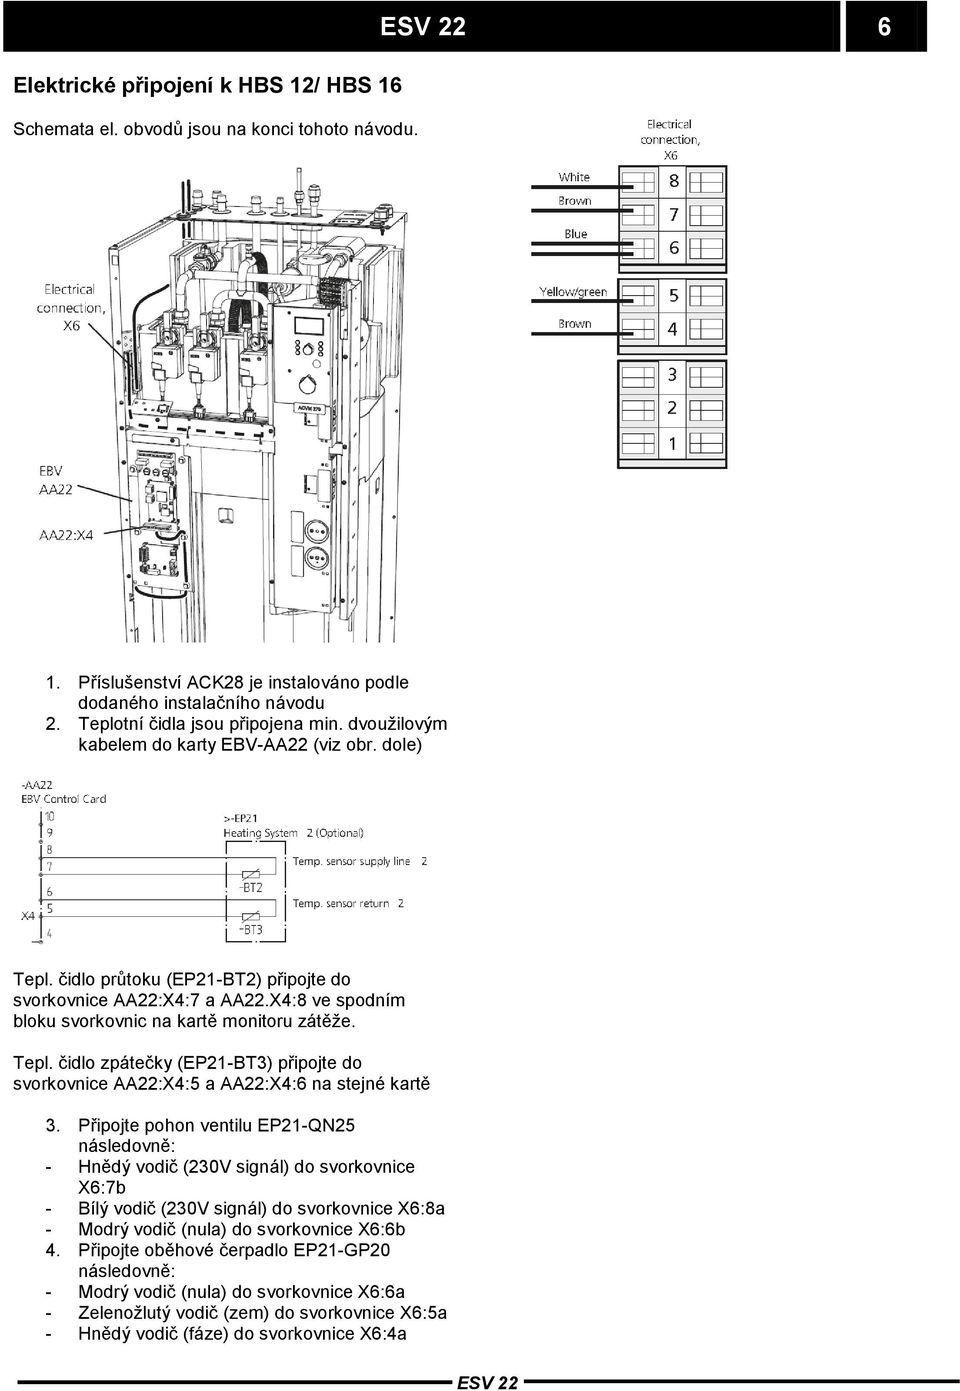 Připojte pohon ventilu EP21-QN25 následovně: - Hnědý vodič (230V signál) do svorkovnice X6:7b - Bílý vodič (230V signál) do svorkovnice X6:8a - Modrý vodič (nula) do svorkovnice X6:6b 4.